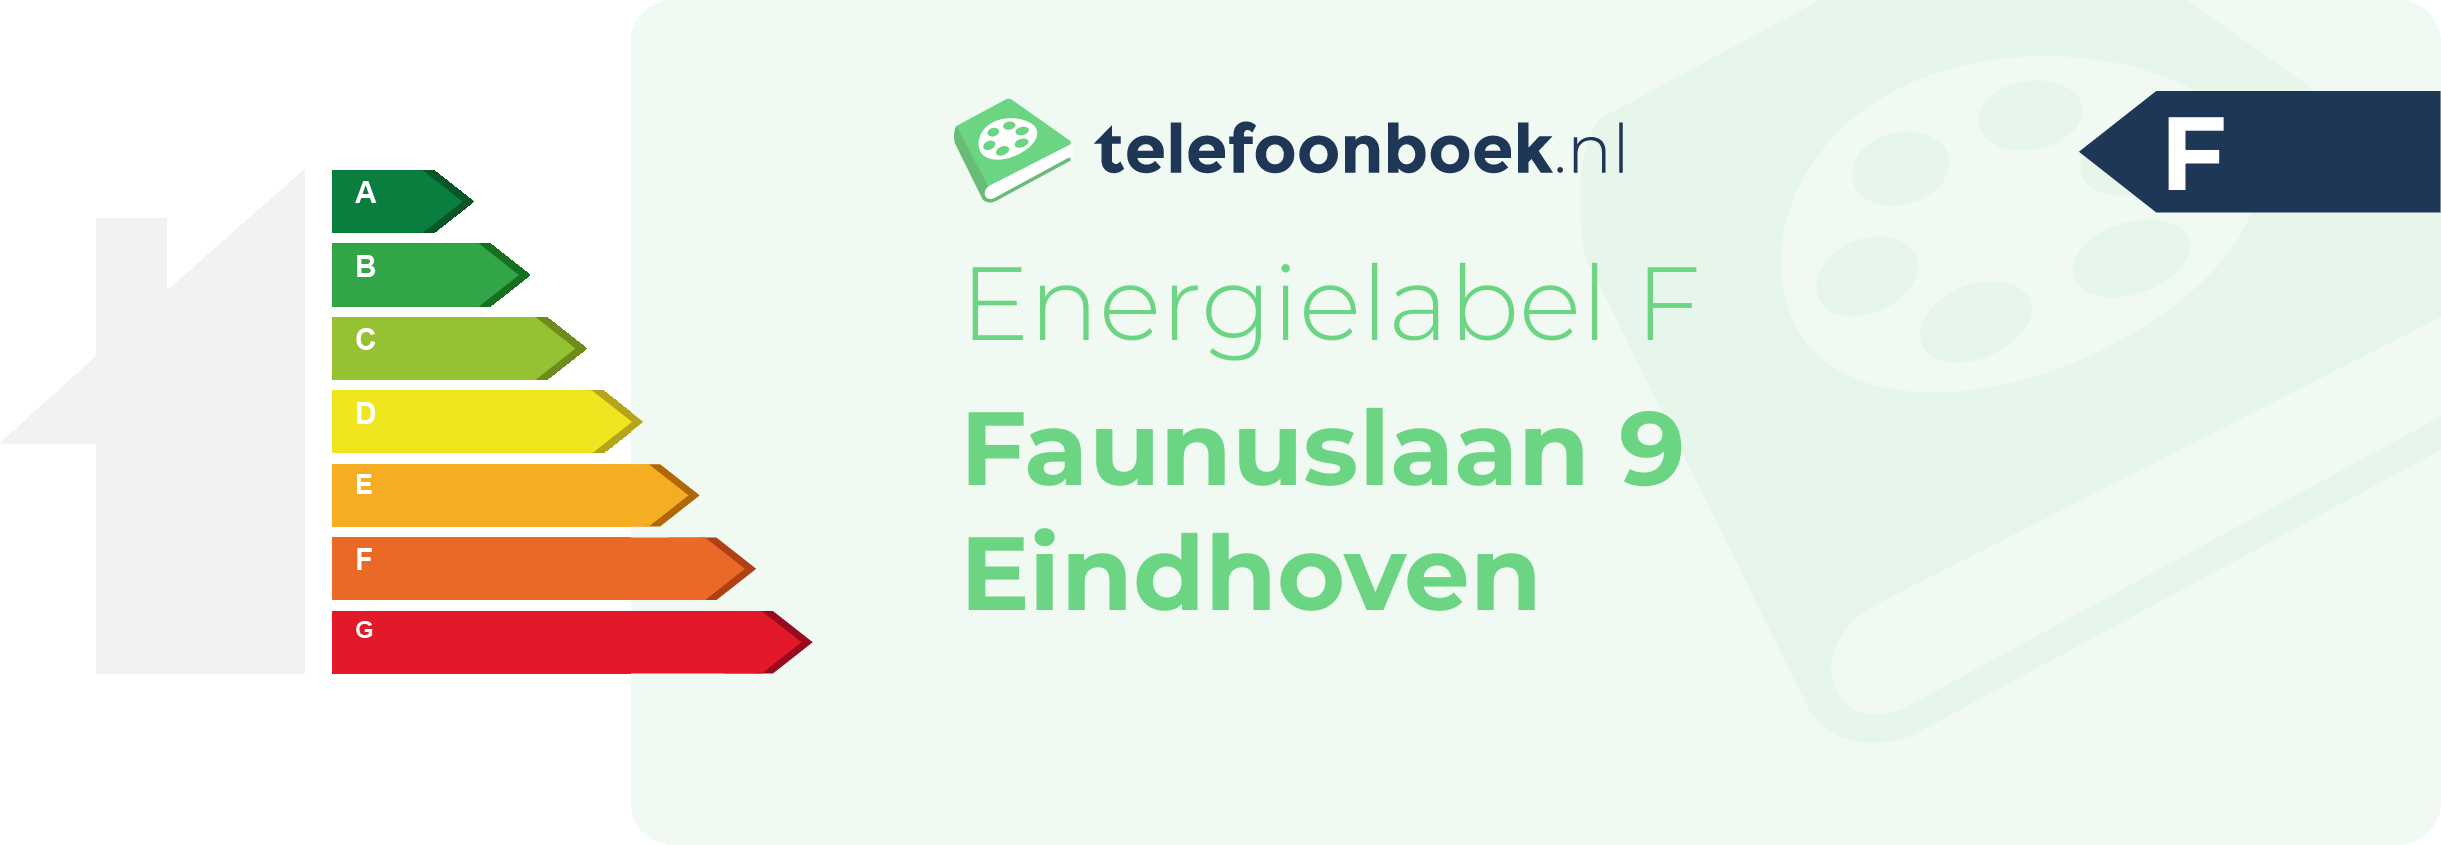 Energielabel Faunuslaan 9 Eindhoven